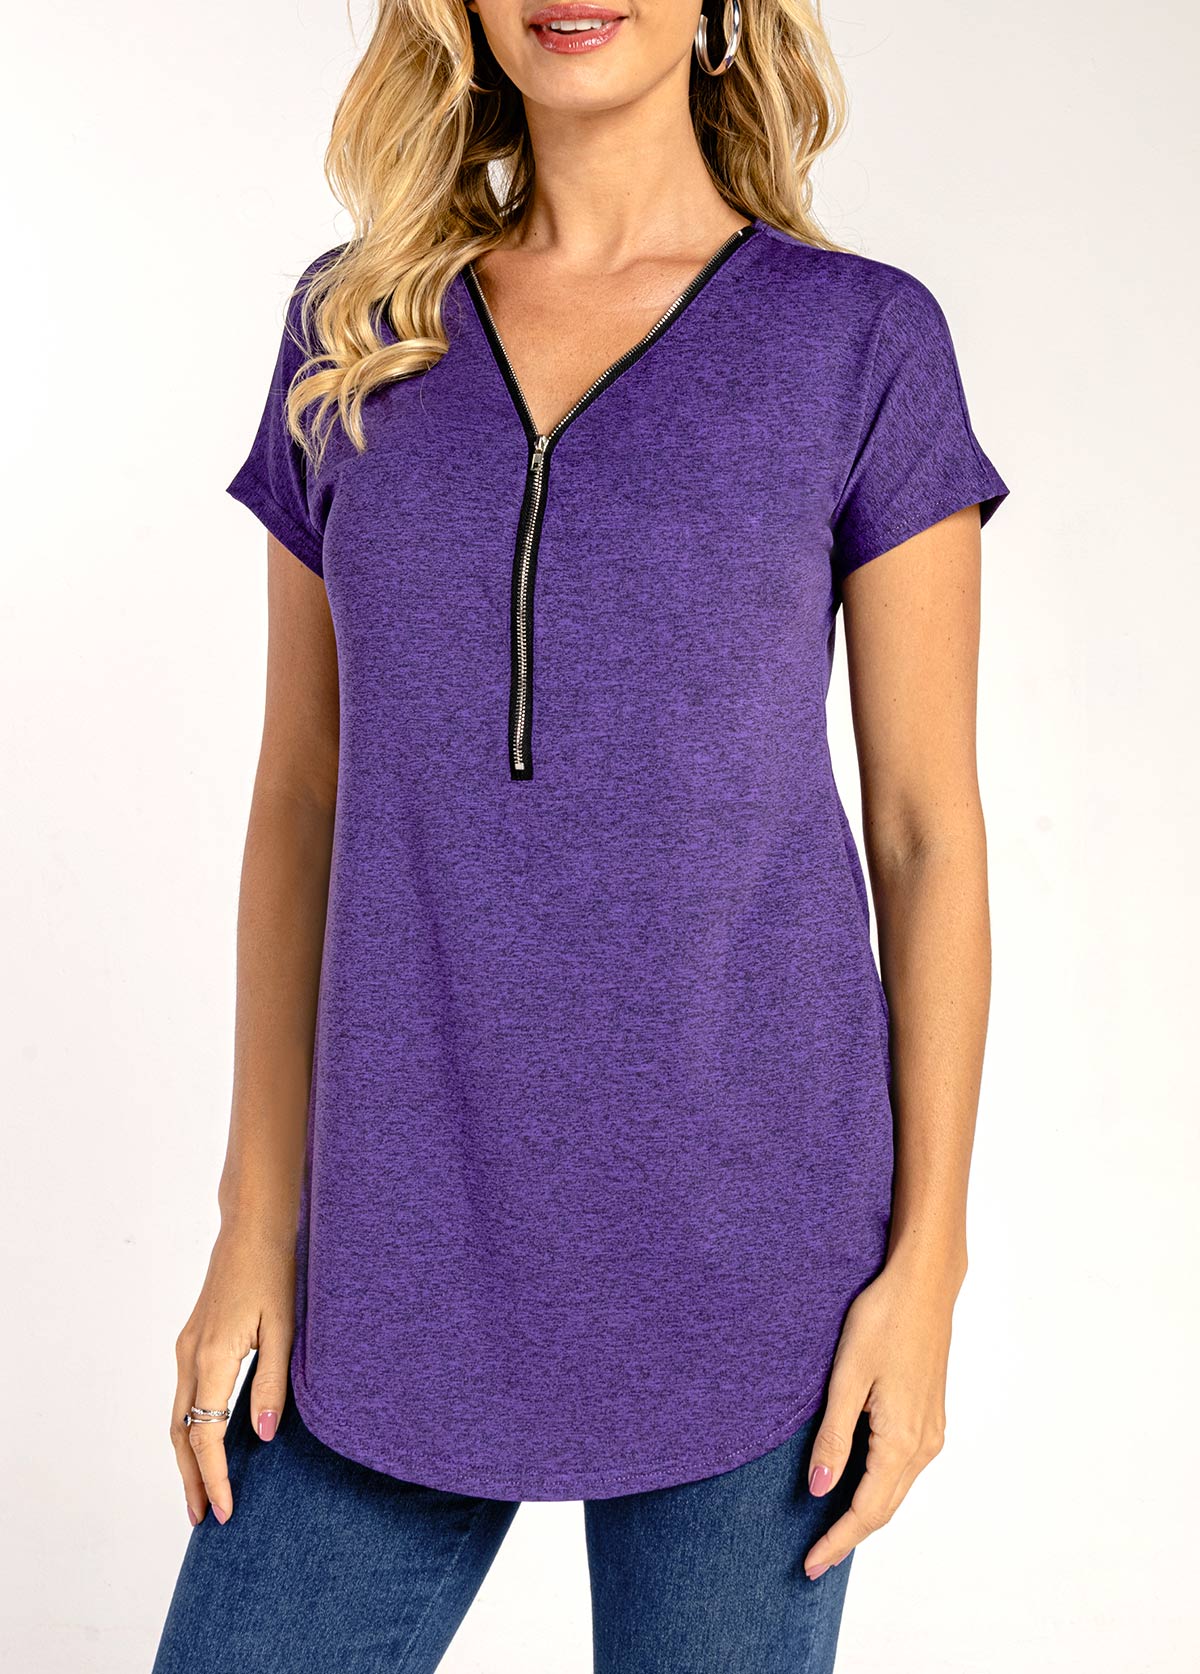 Quarter Zip Short Sleeve Purple T Shirt